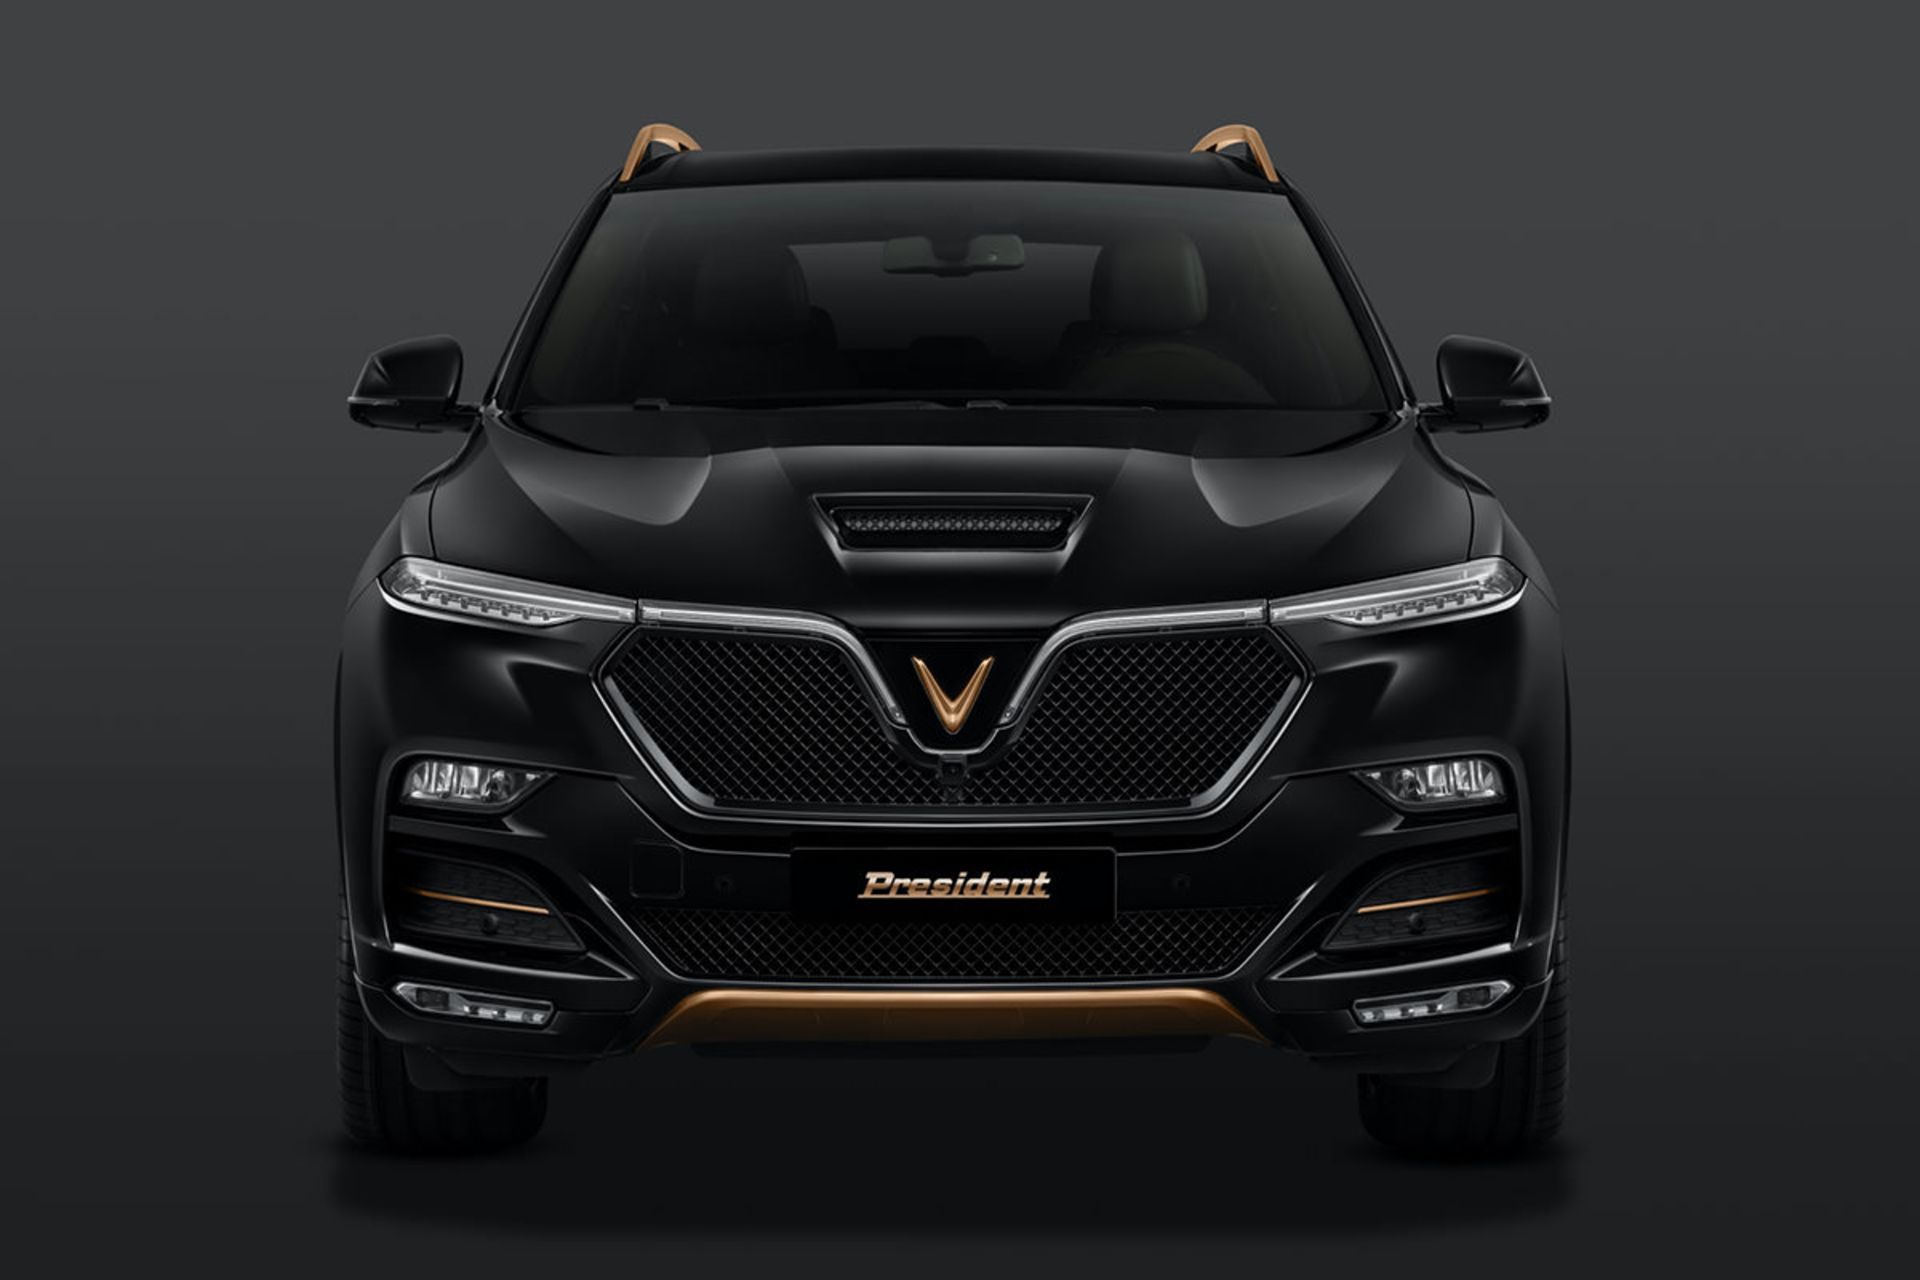 مرجع متخصصين ايران نماي جلو شاسي بلند لوكس وين فست پرزيدنت / VinFast President Luxury SUV با رنگ مشكي